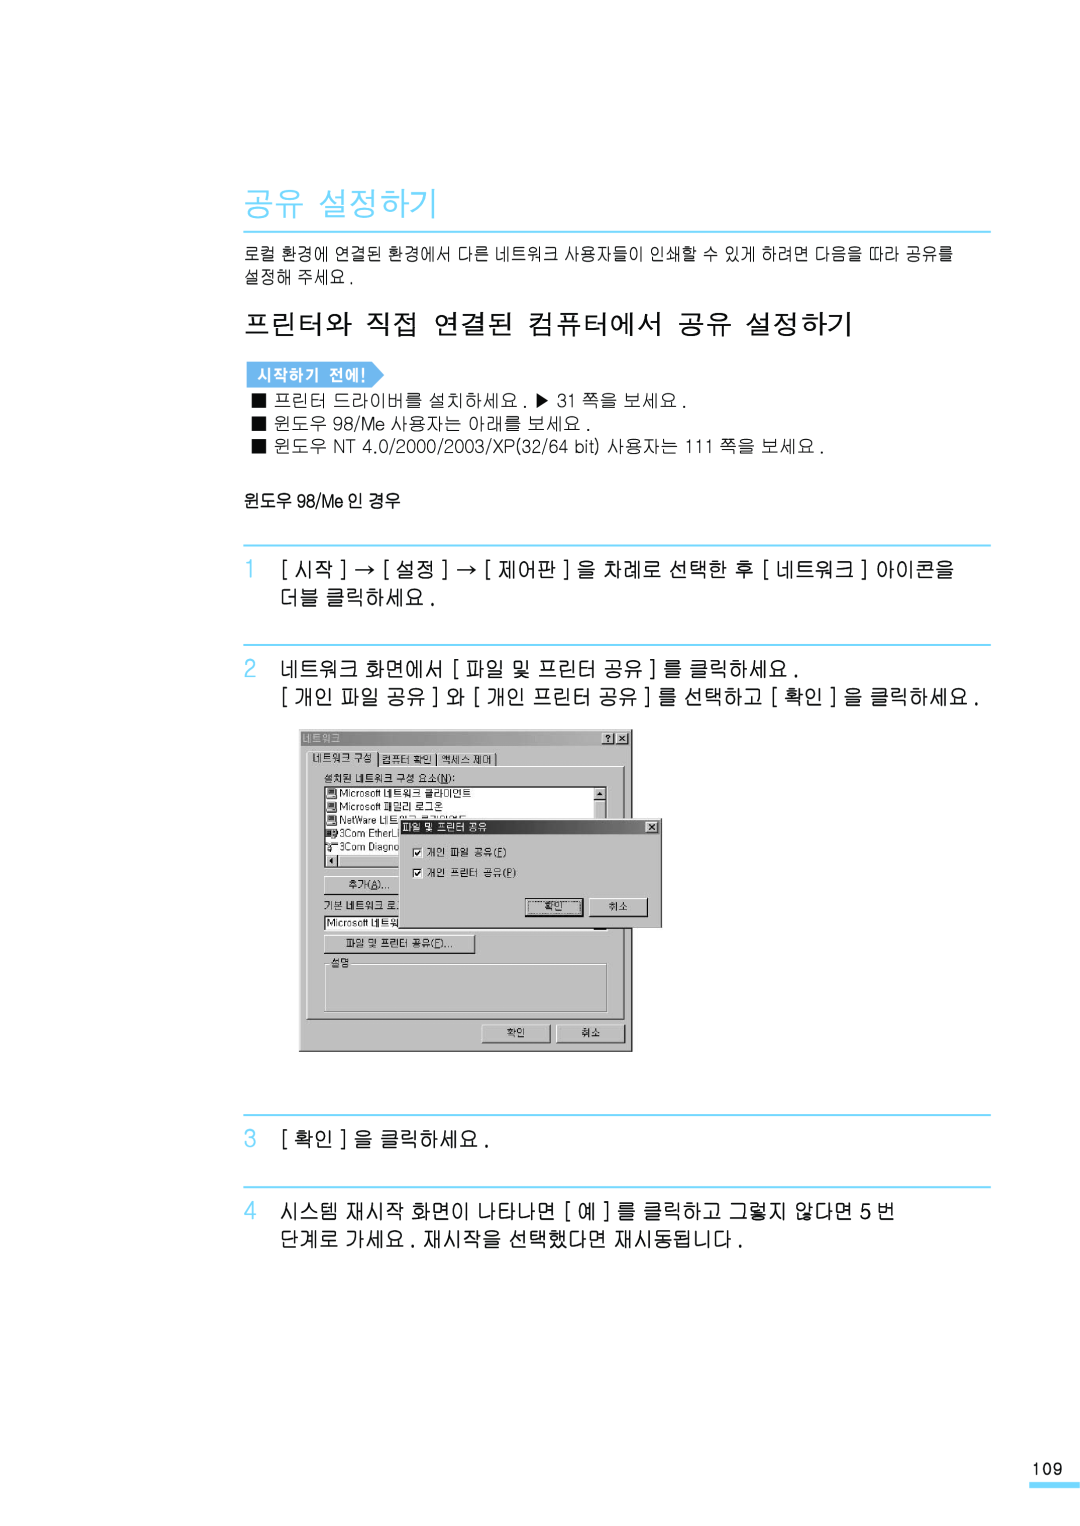 Samsung ML-2571N manual 프린터와 직접 연결된 컴퓨터에서 공유 설정하기, 1 시작 → 설정 → 제어판 을 차례로 선택한 후 네트워크 아이콘을 더블 클릭하세요, 3 확인 을 클릭하세요 